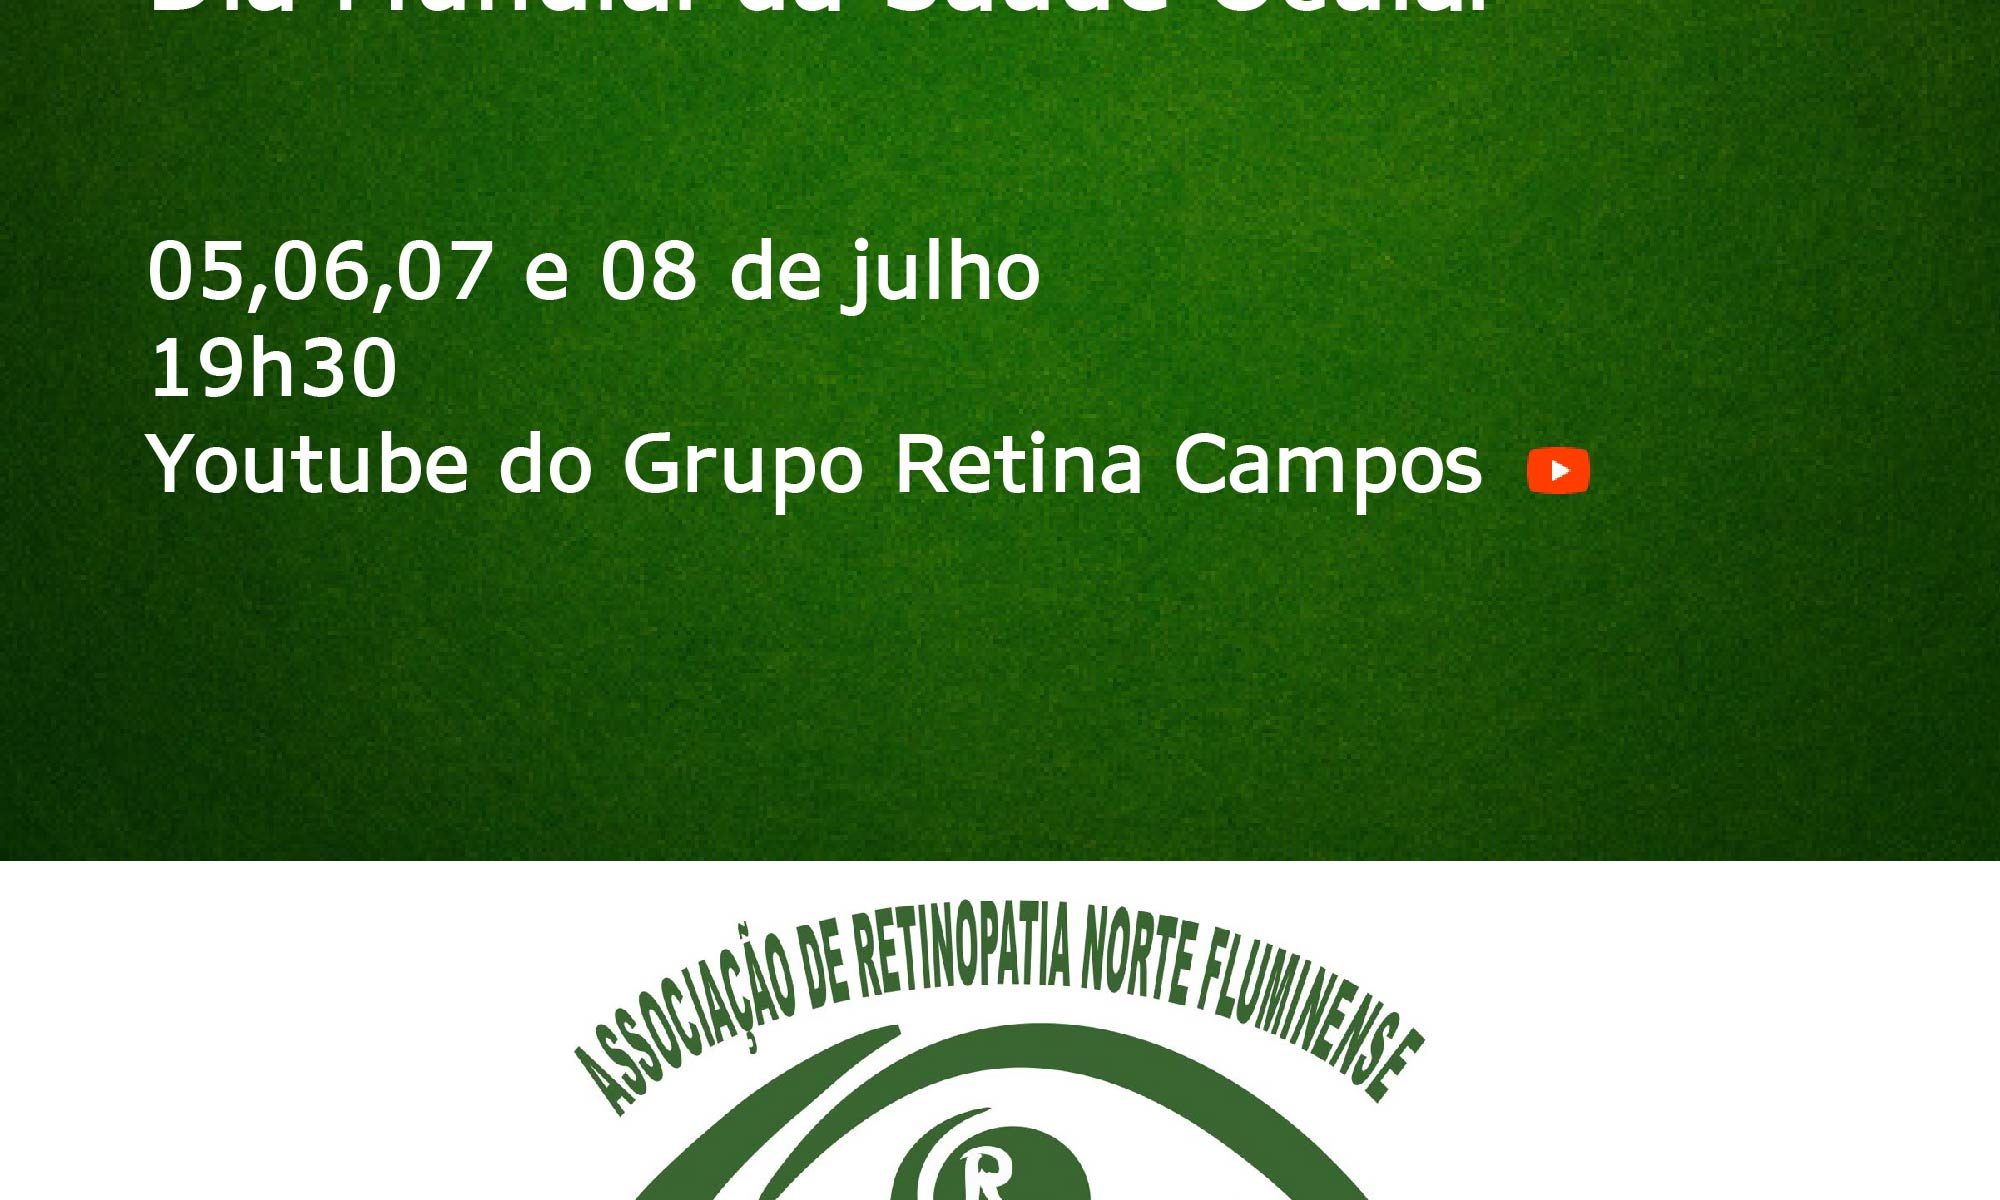 imagem de fundo verde escuro com as informações sobre o evento e a logo do grupo Retina Campos